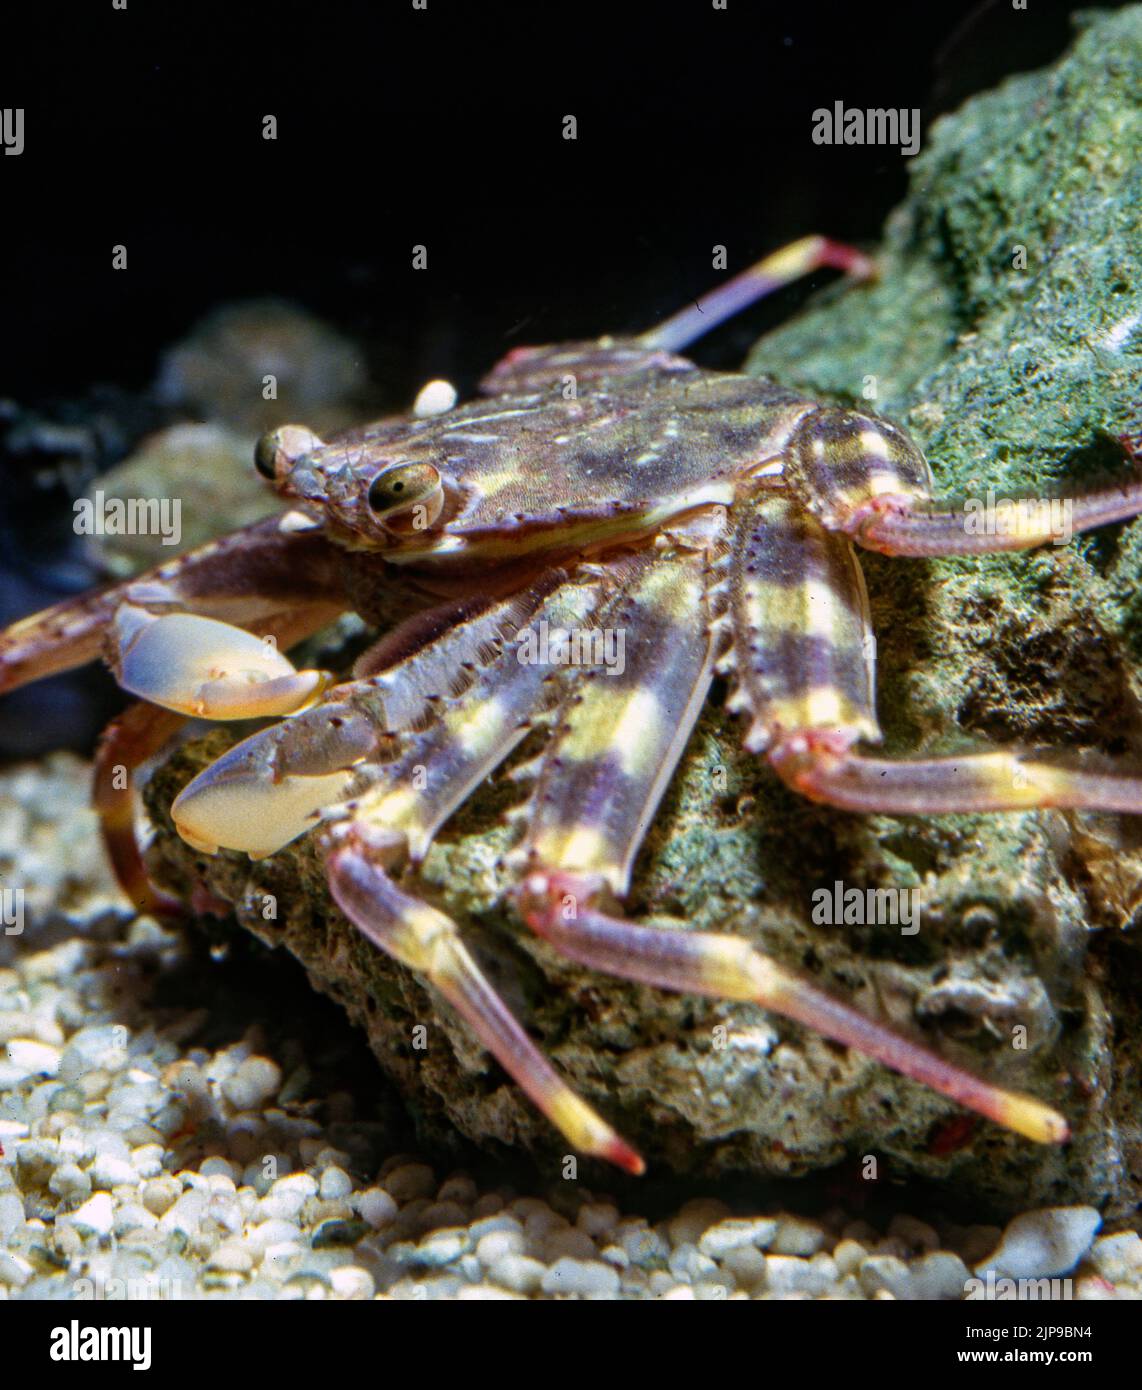 Nimble spray crab (Percnon gibbesi). Stock Photo